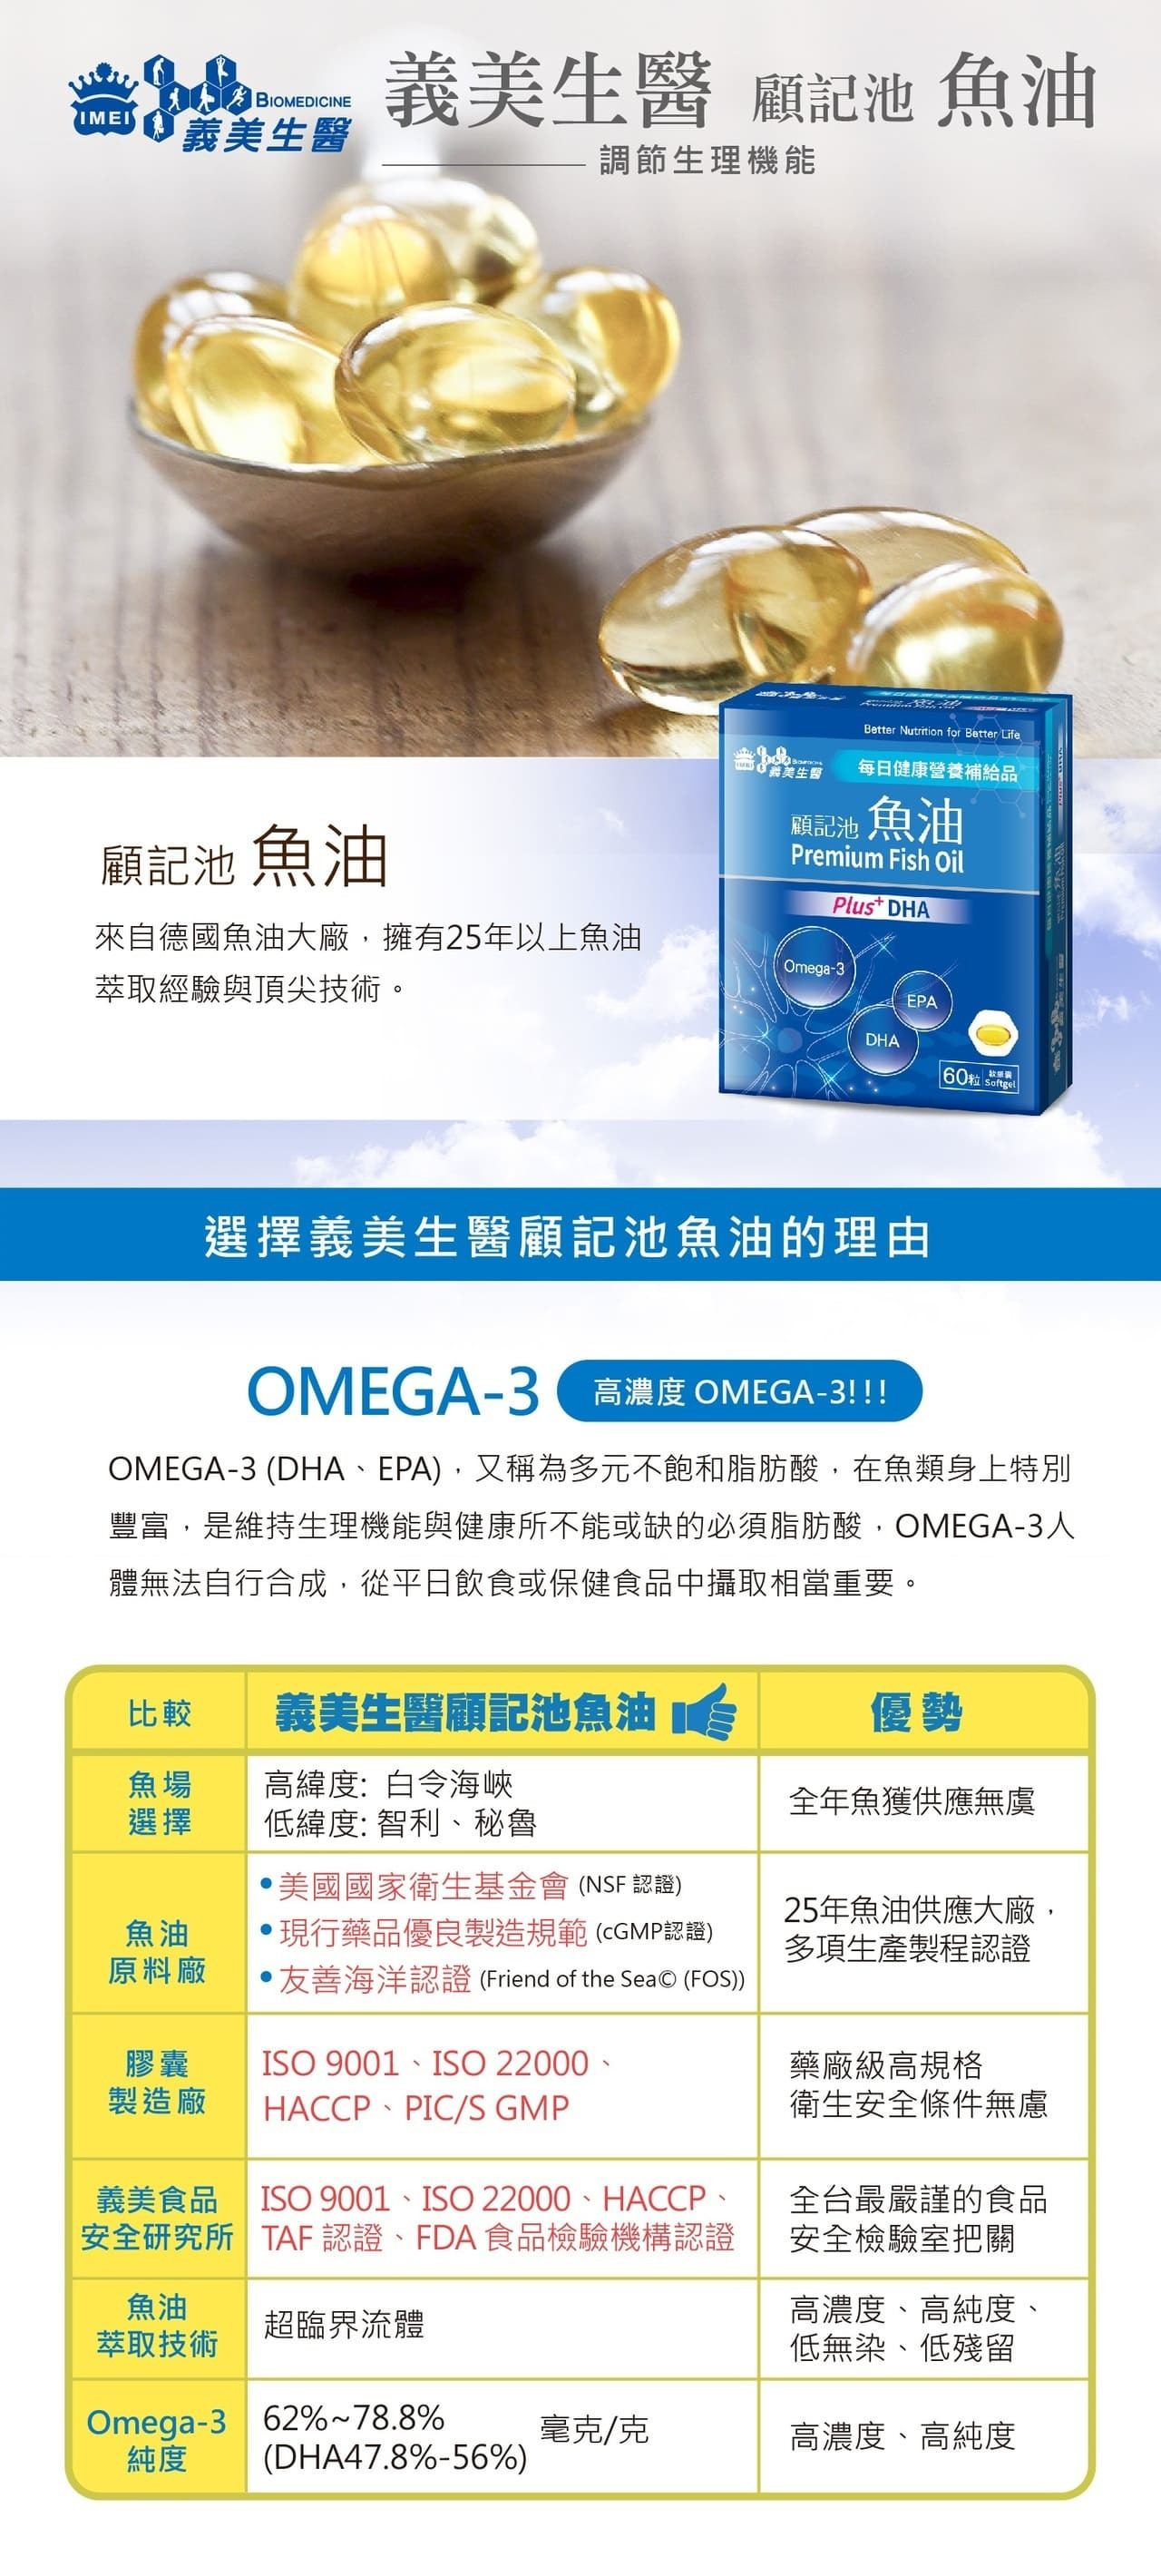 「顧記池魚油」來自擁有頂尖萃取技術的德國魚油大廠，富含高濃度OMEGA-3